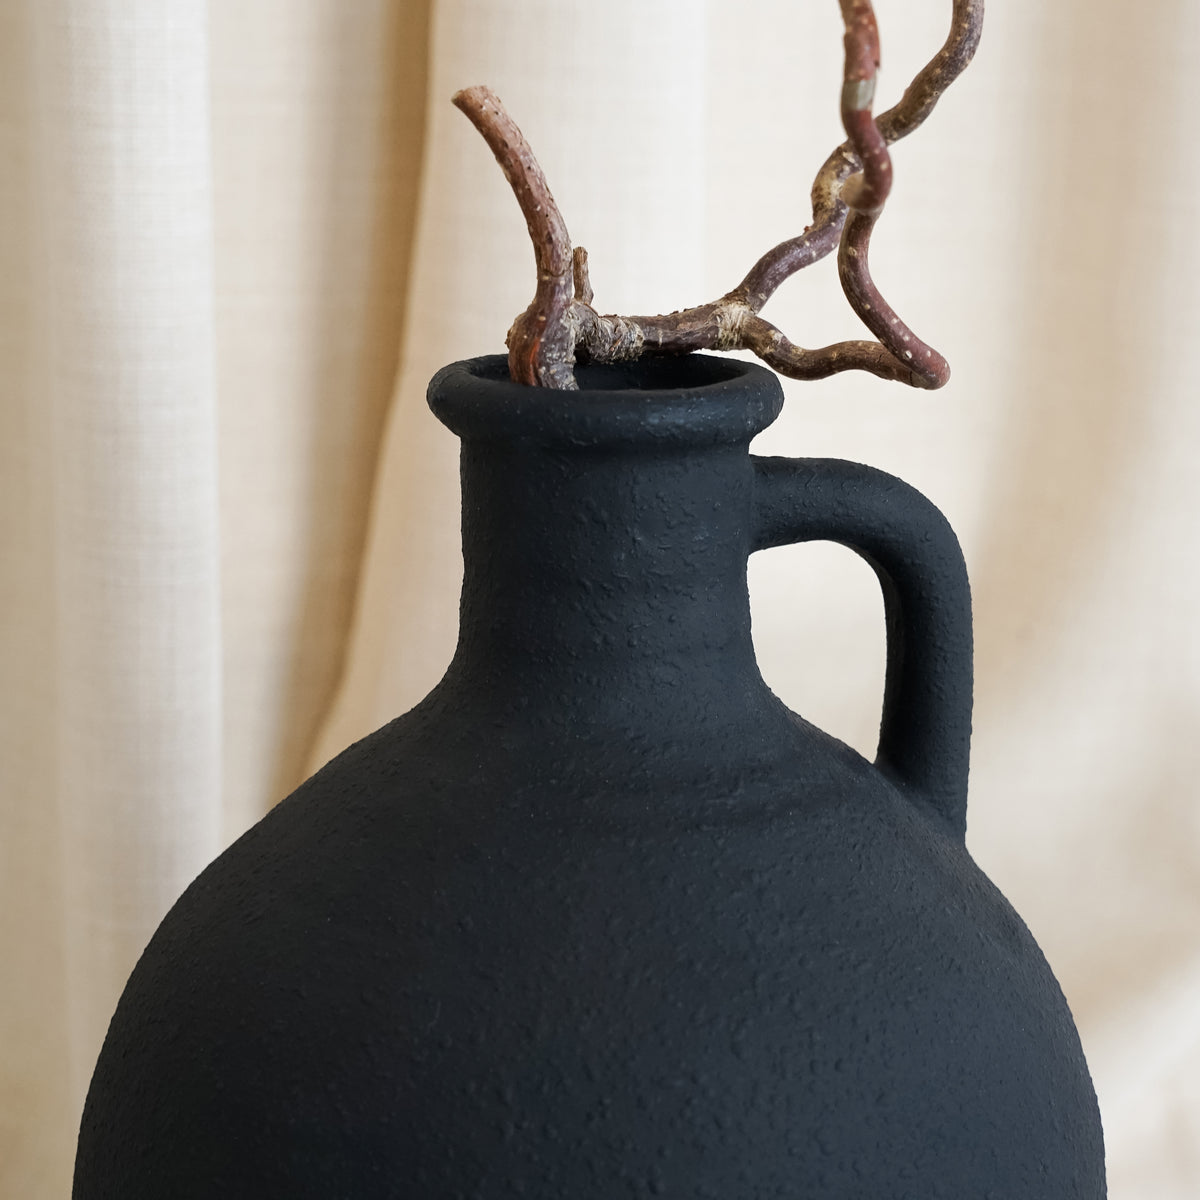 Torrano - Black Textured Ceramic Large Vase